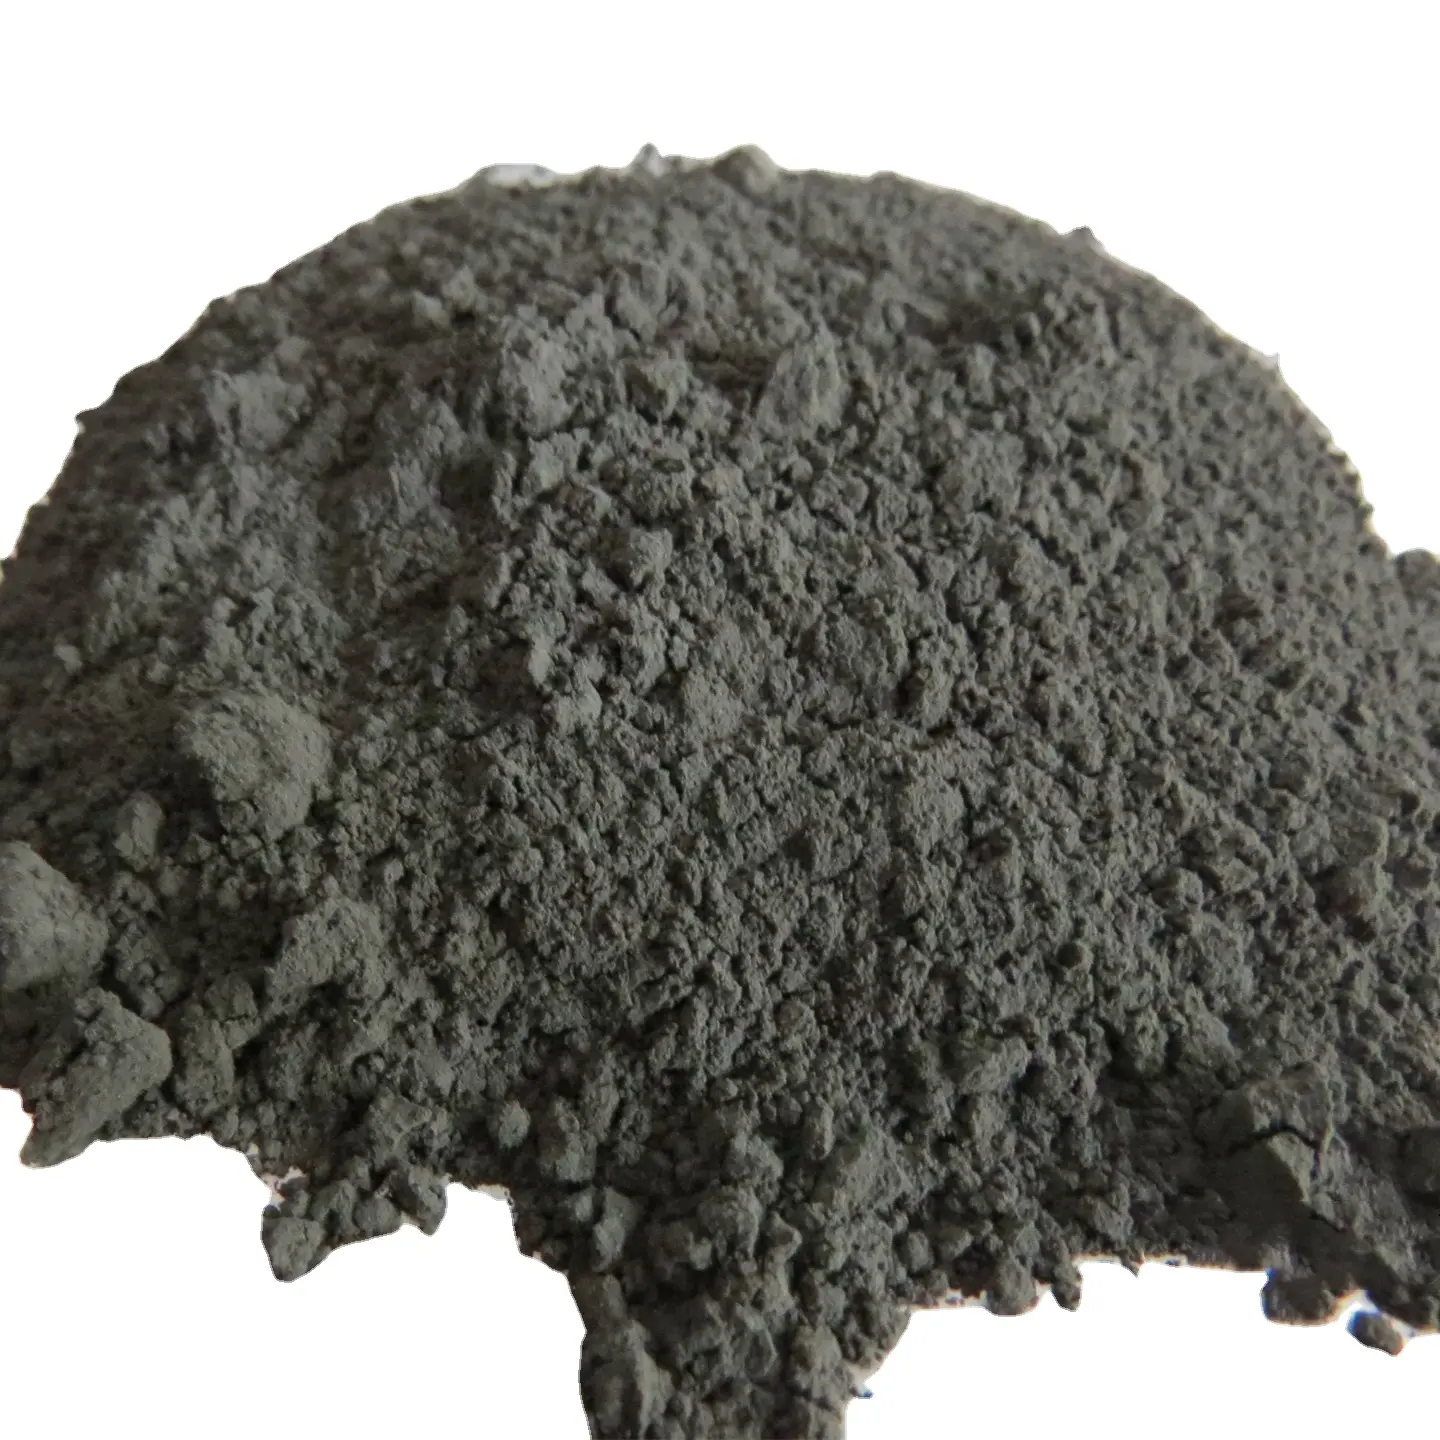 Wolfram Powder 99.95% pure Tungsten powder